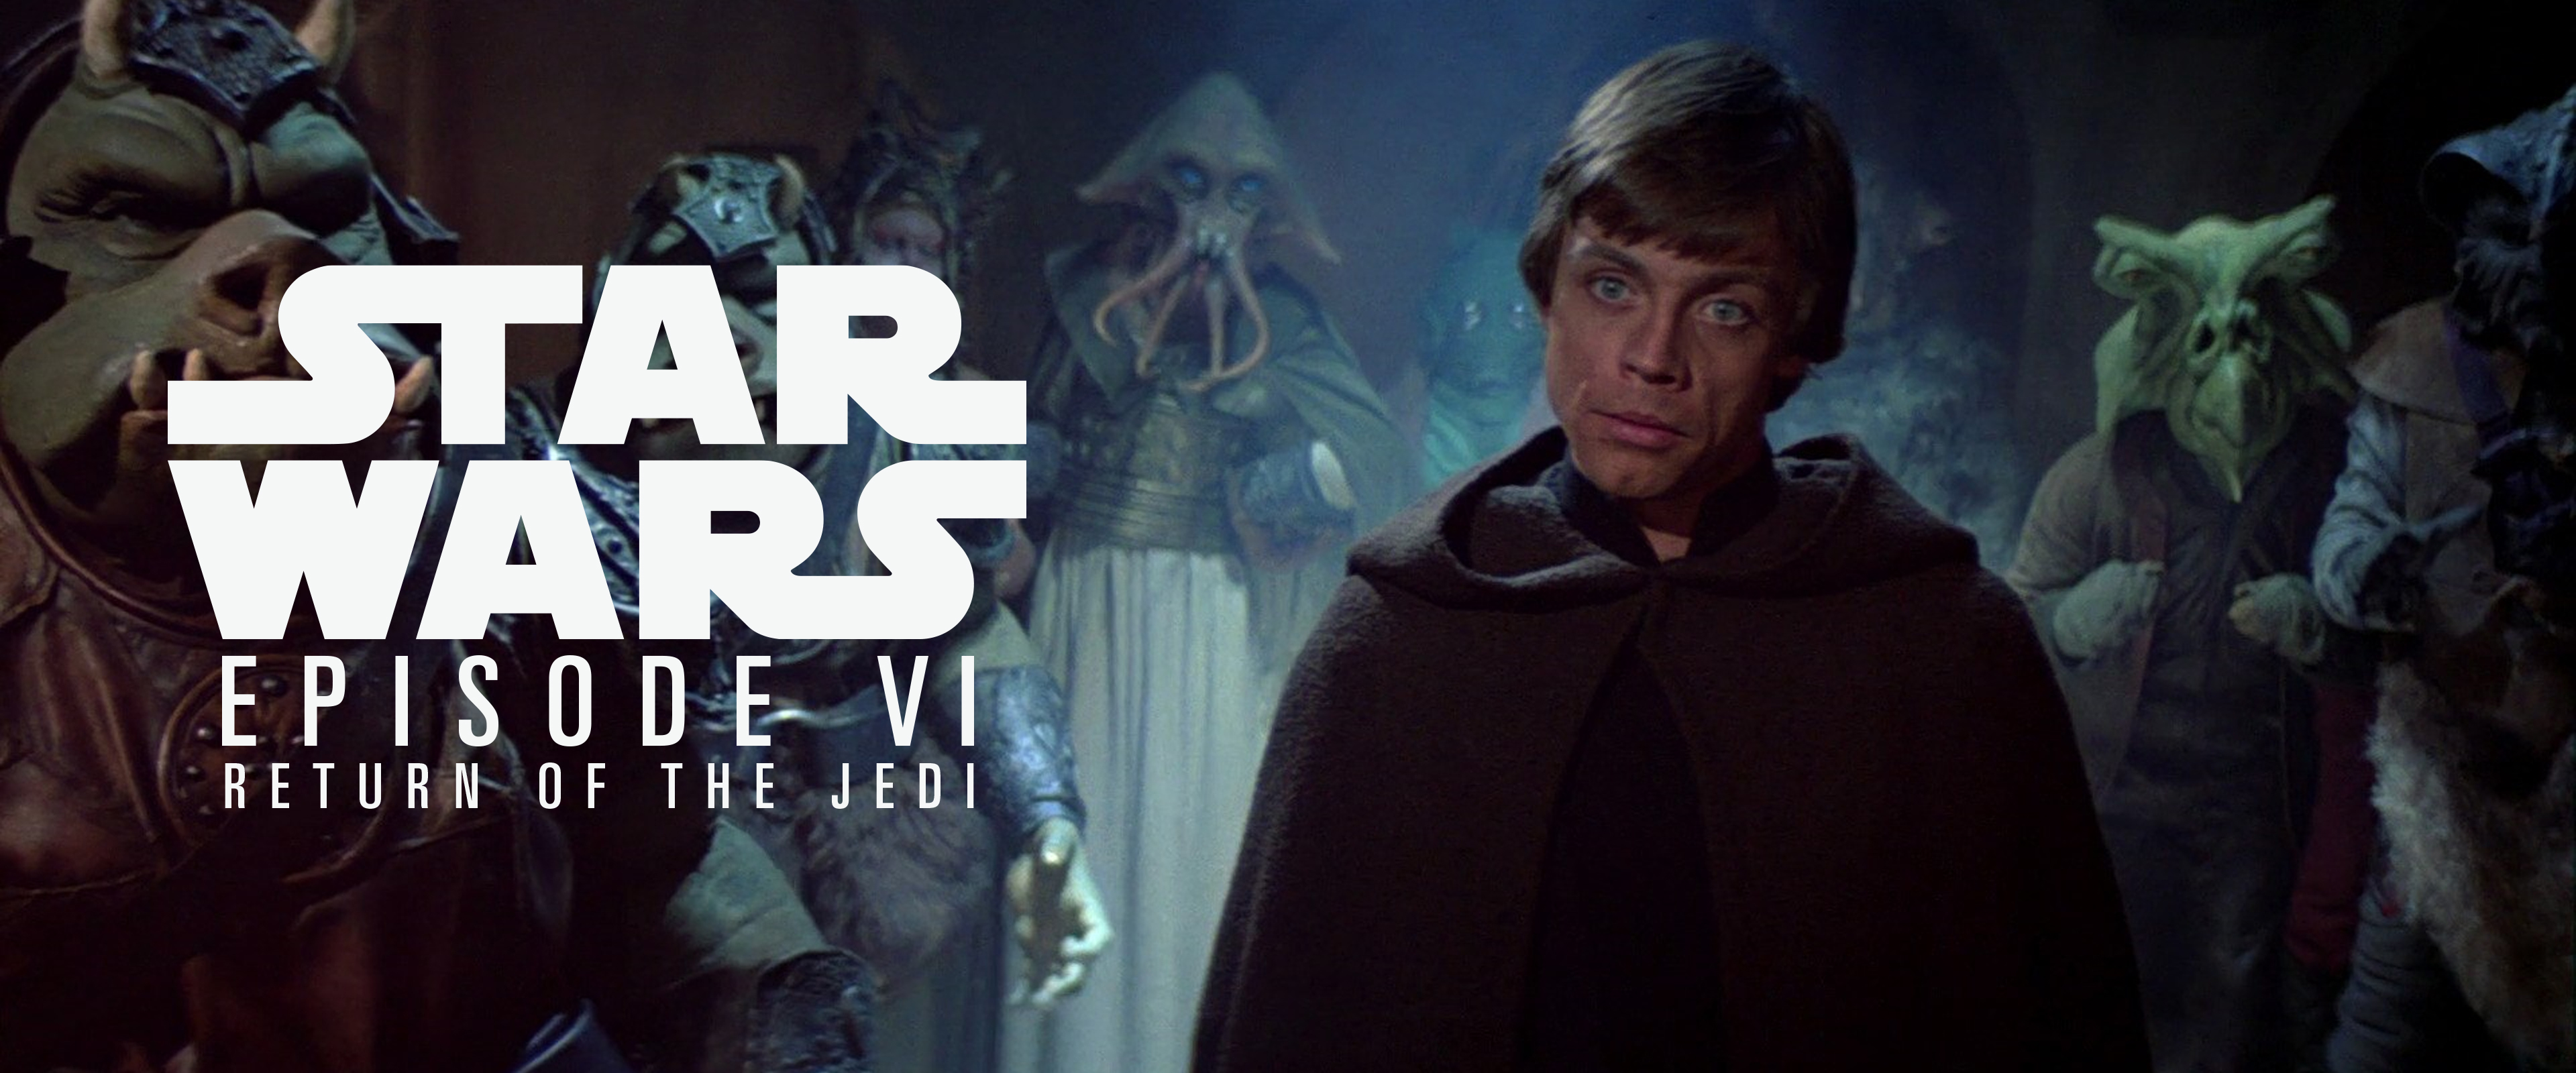 Episode VI: Return of the Jedi